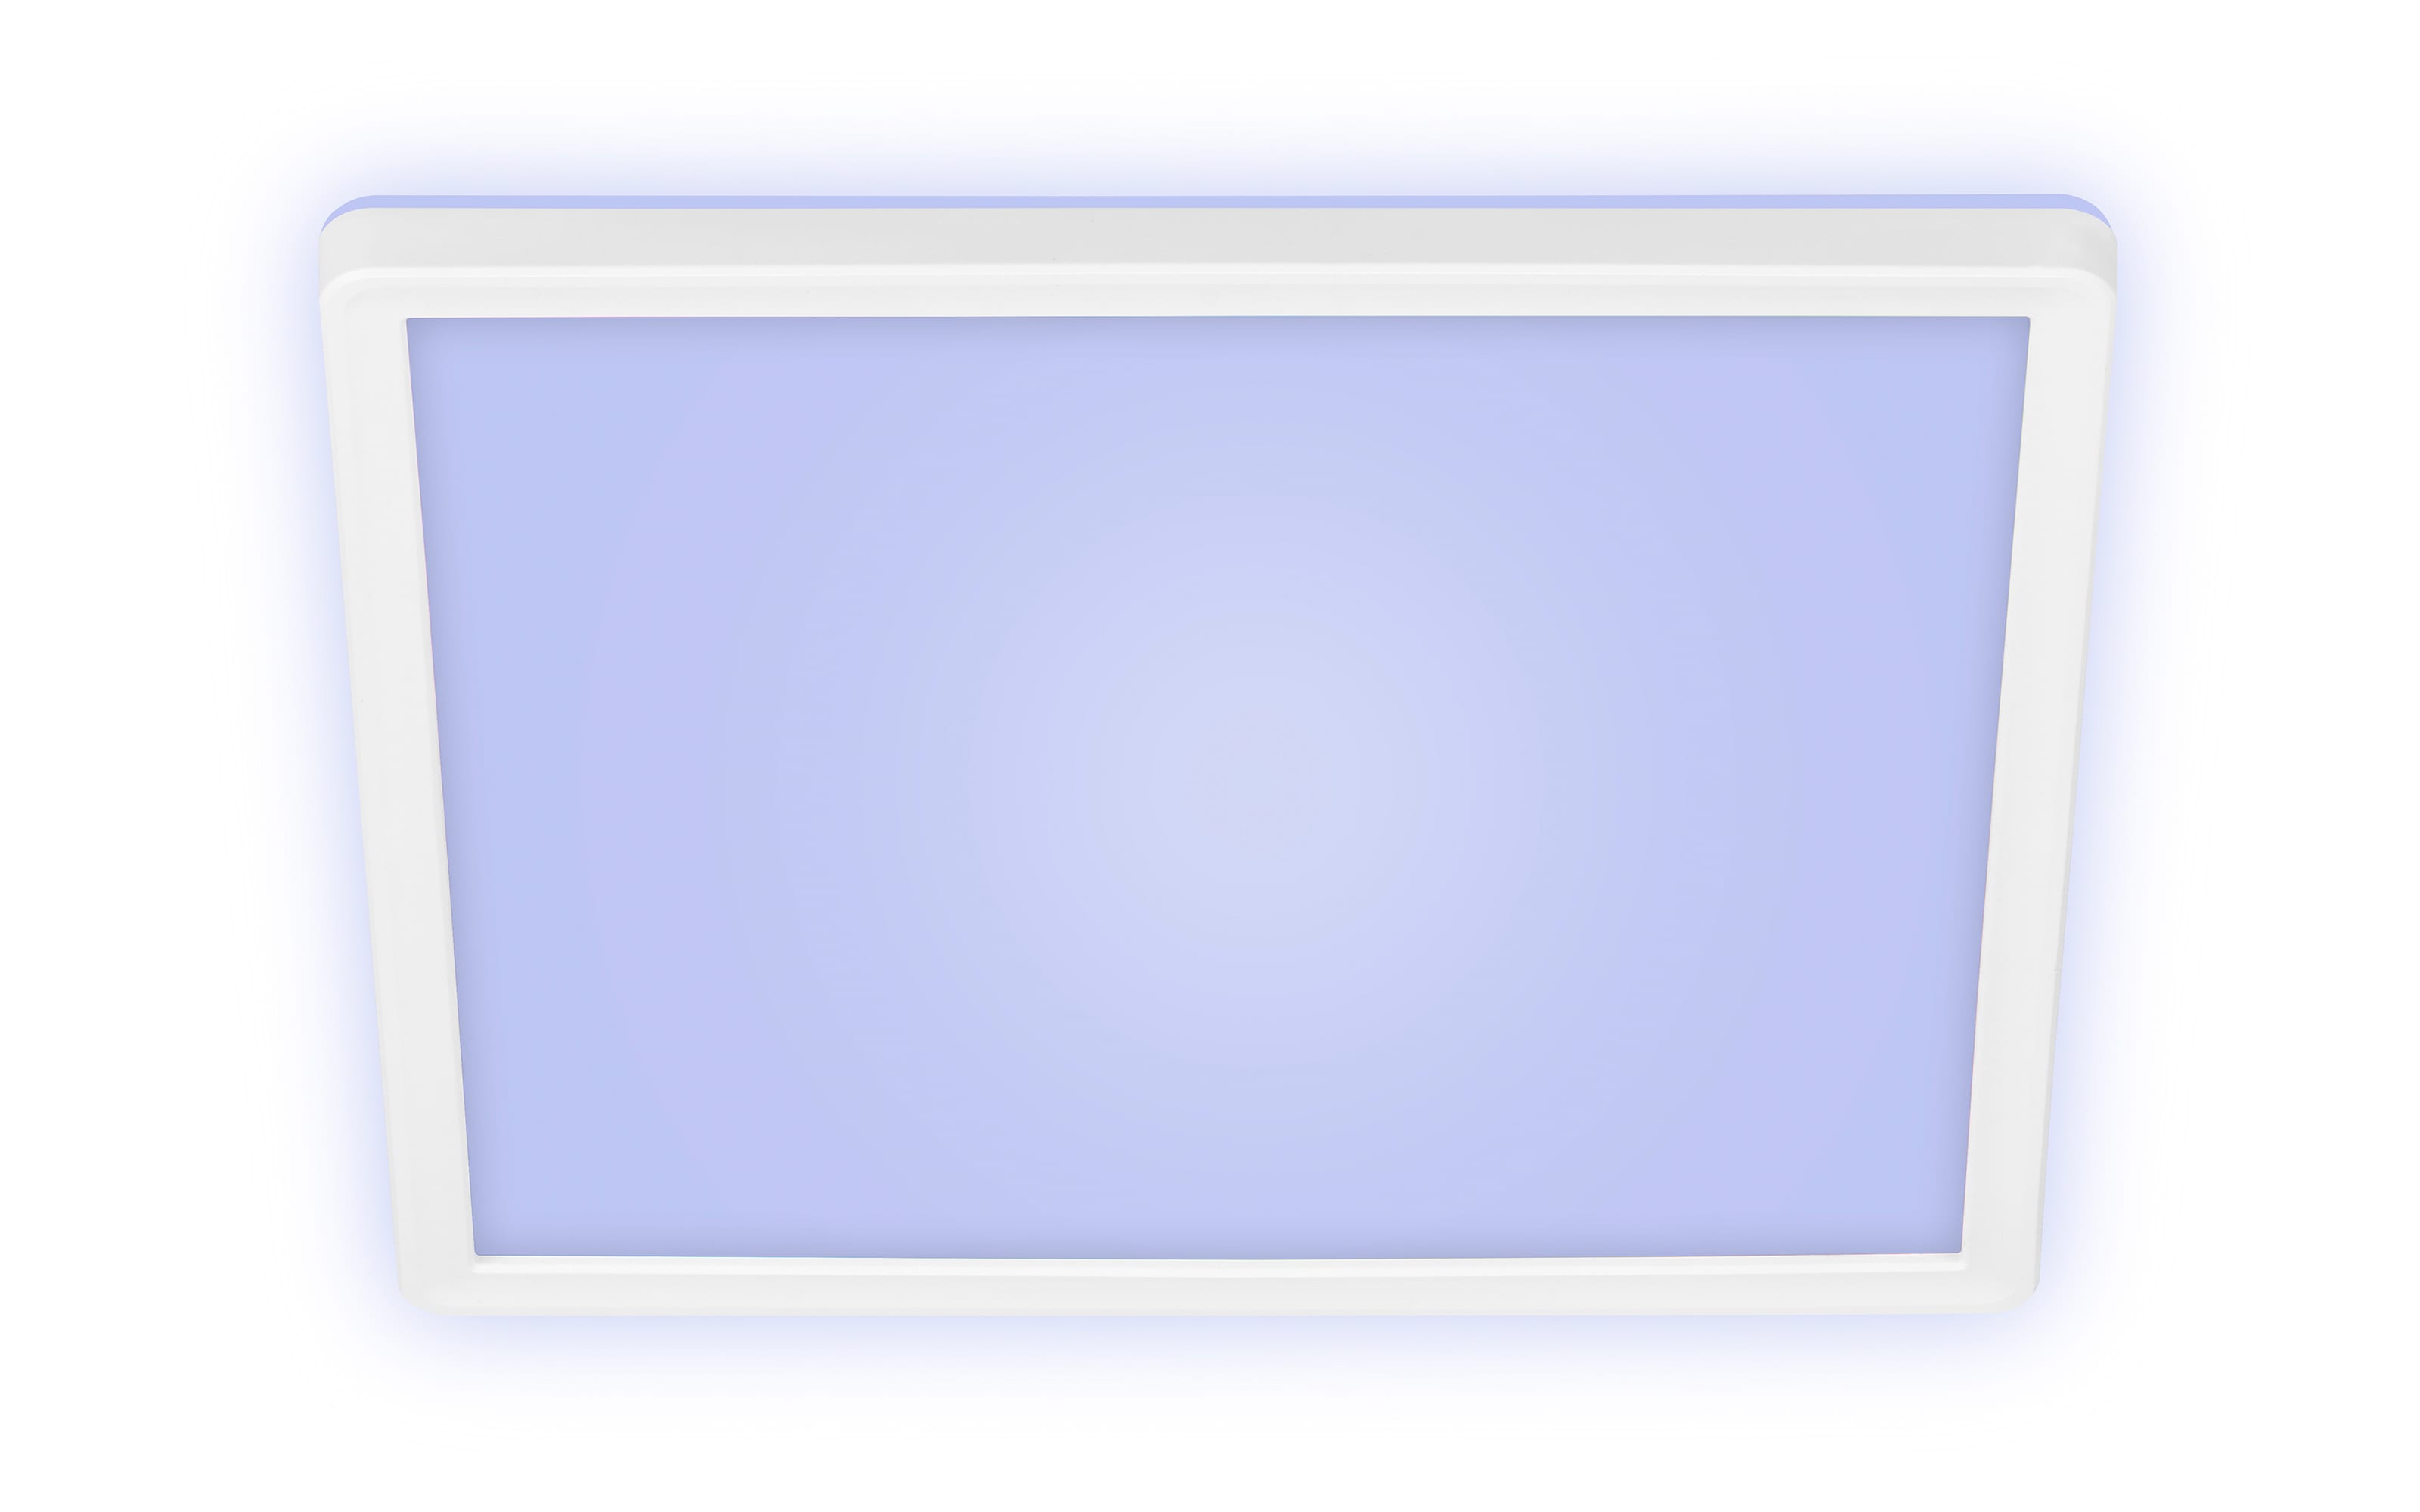 LED-Deckenleuchte Slim RGB in weiß, 29,3 x 29,3 cm